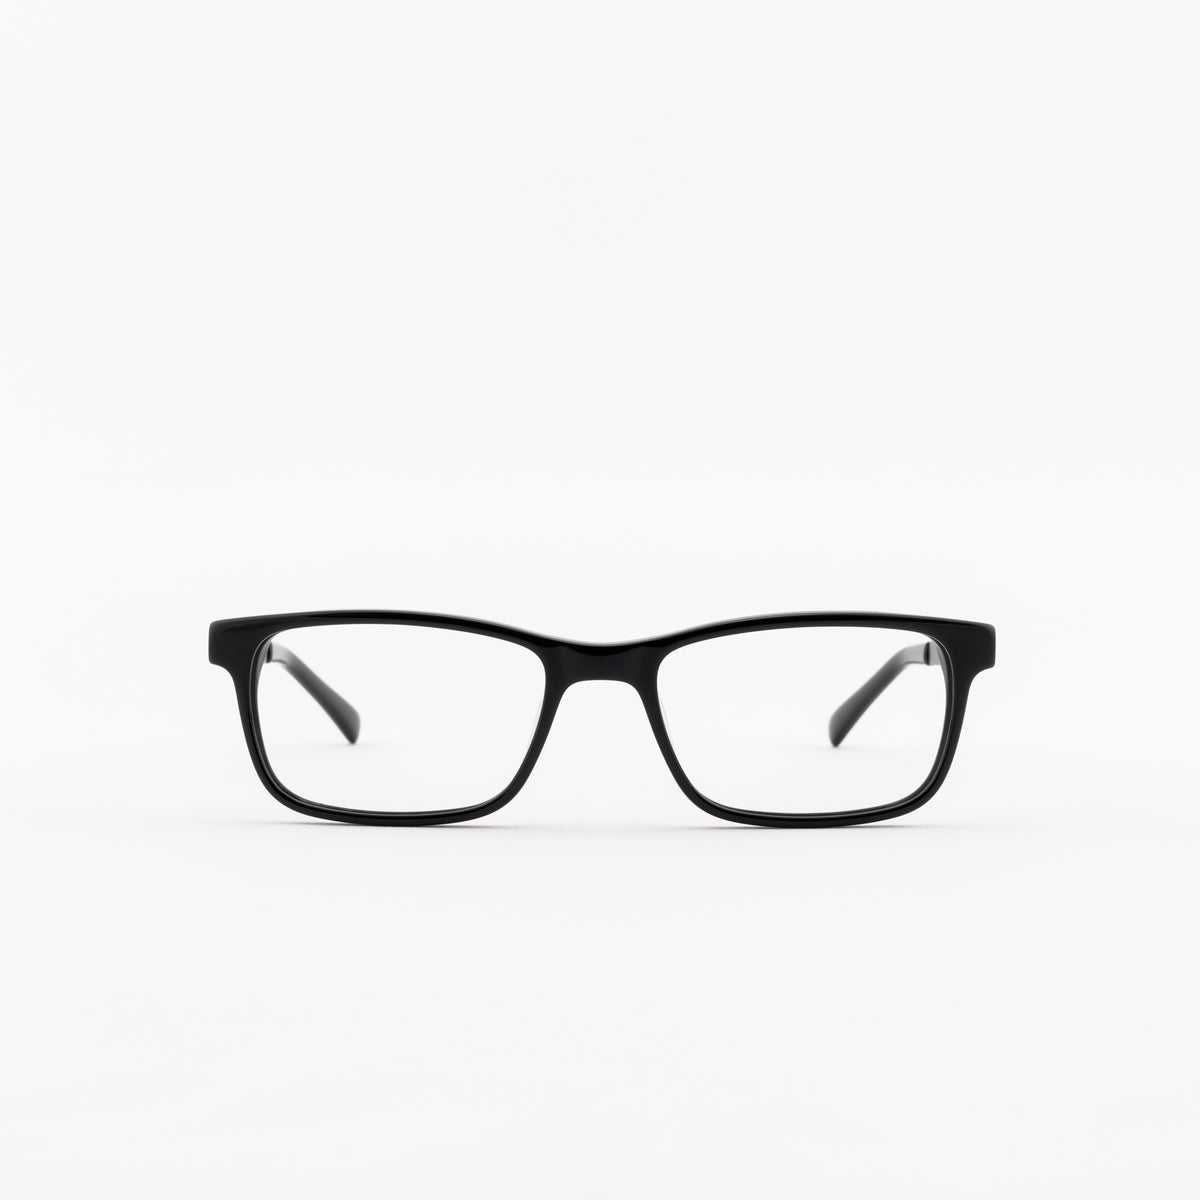 Superflex SF-484 Eyeglasses